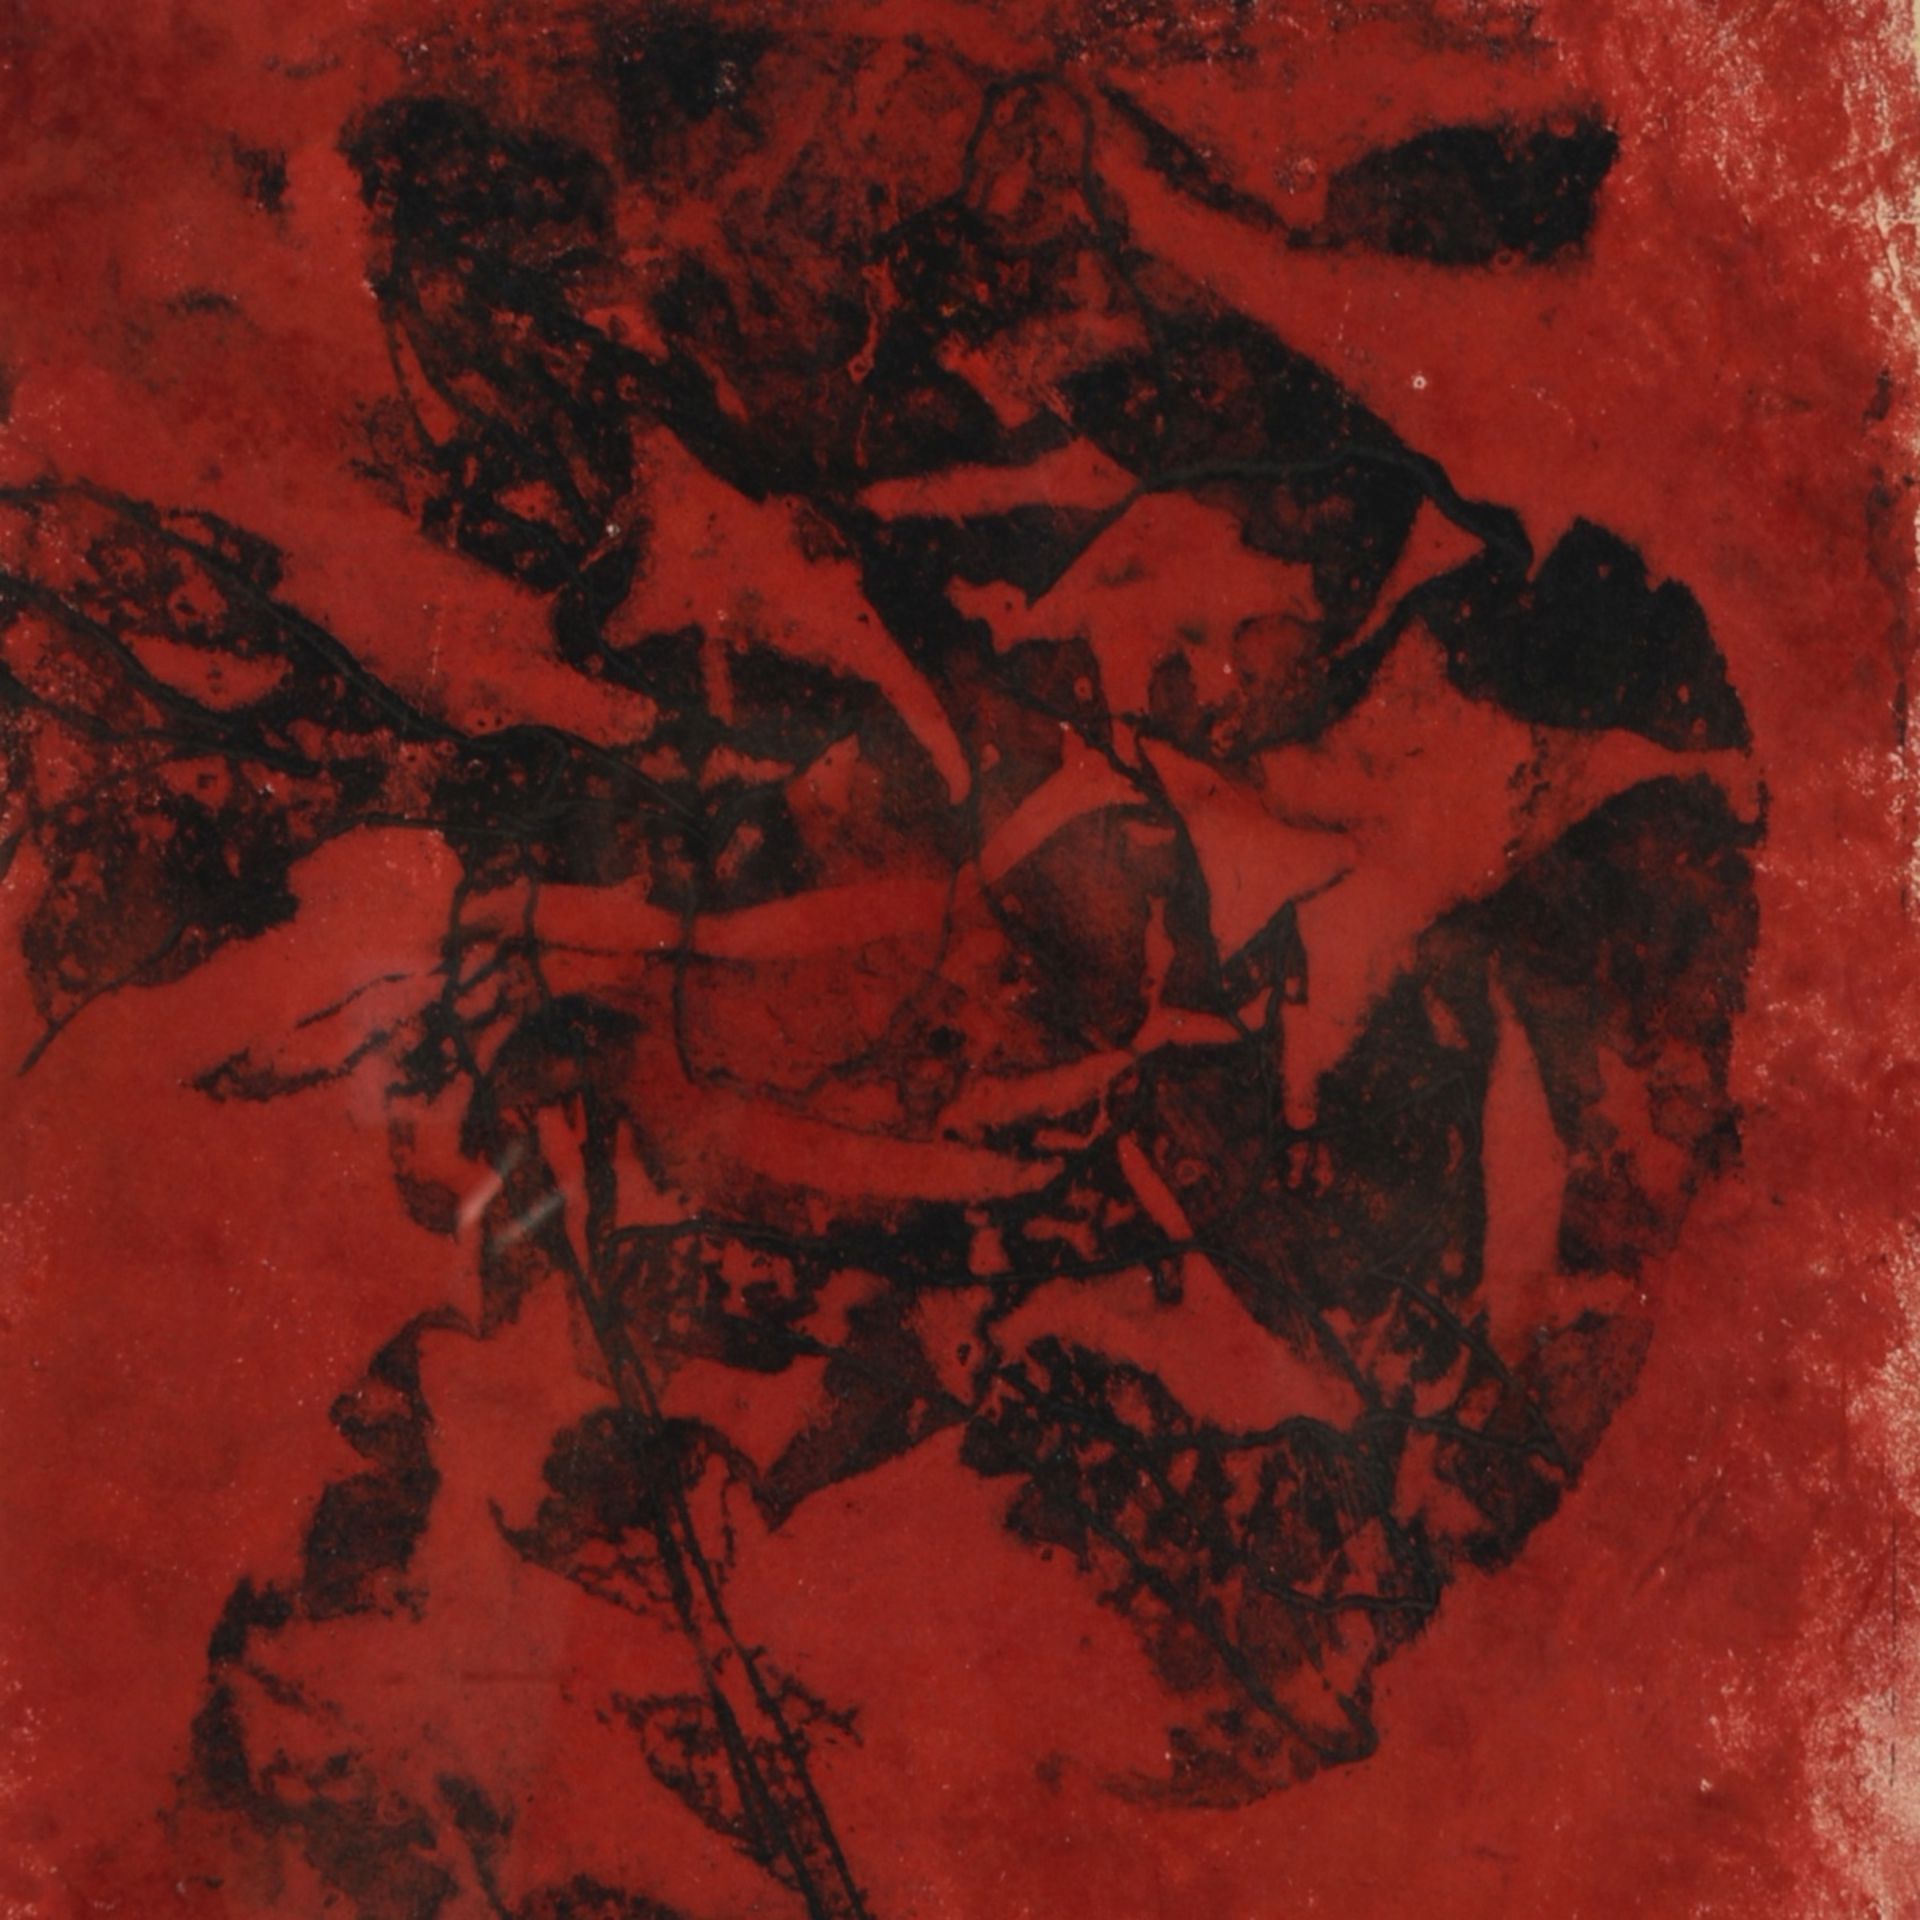 Steding, Willy (um 1920 - 1950 tätig in Hamburg-Wandsbek) Lithografie in Rot und Schwarz auf